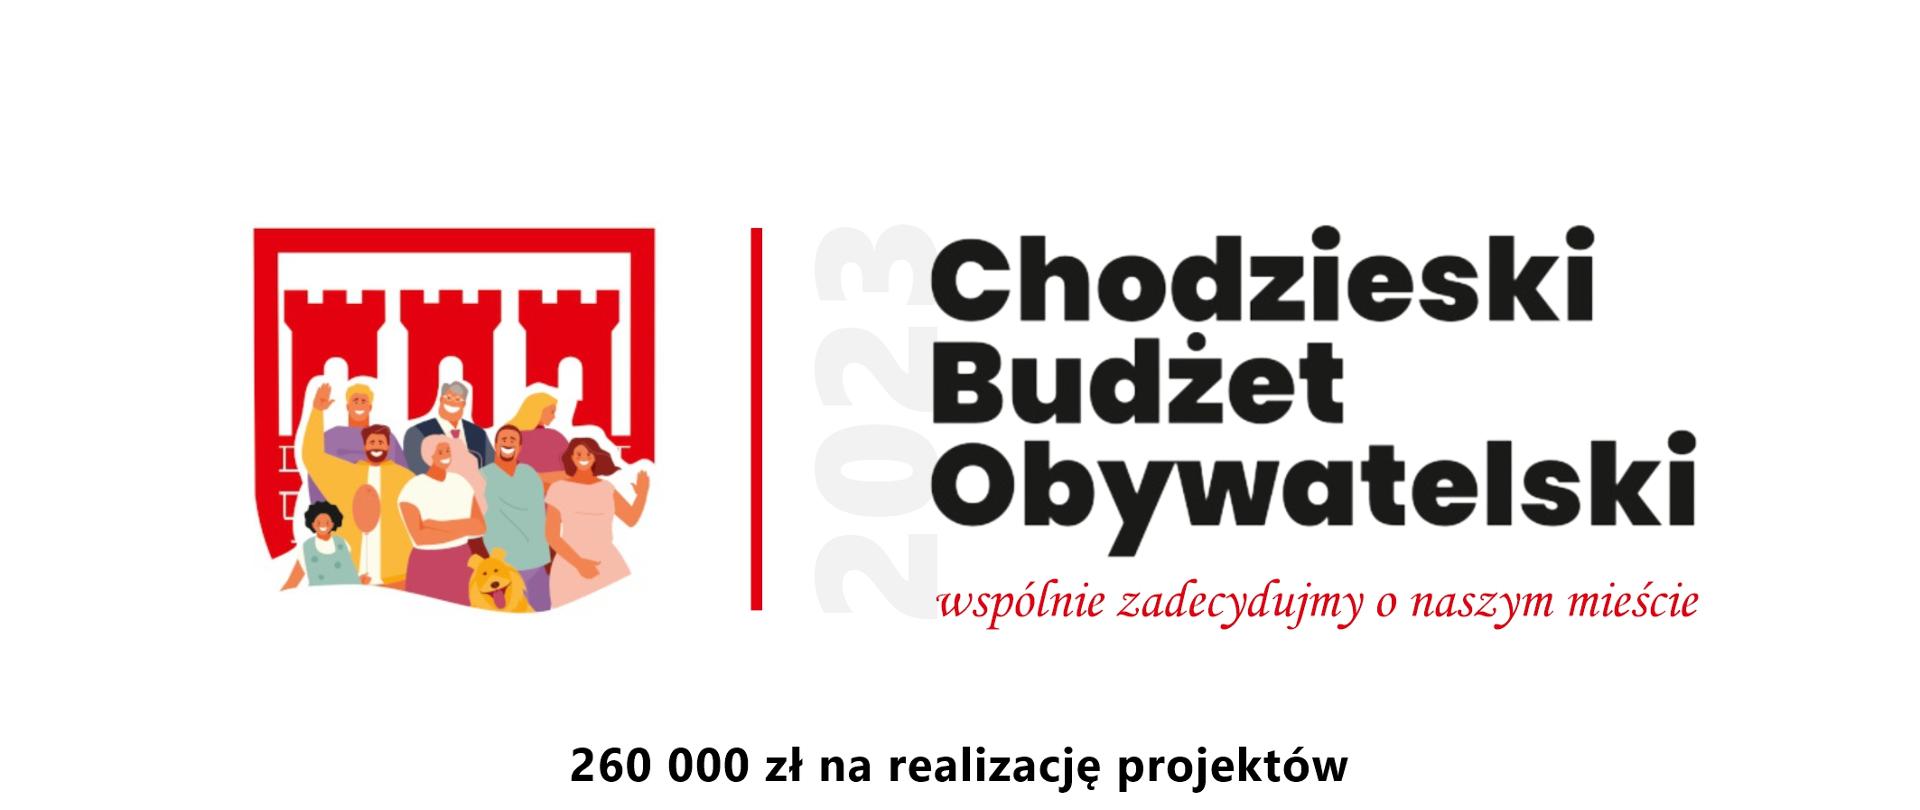 baner Chodzieski Budżet Obywatelski